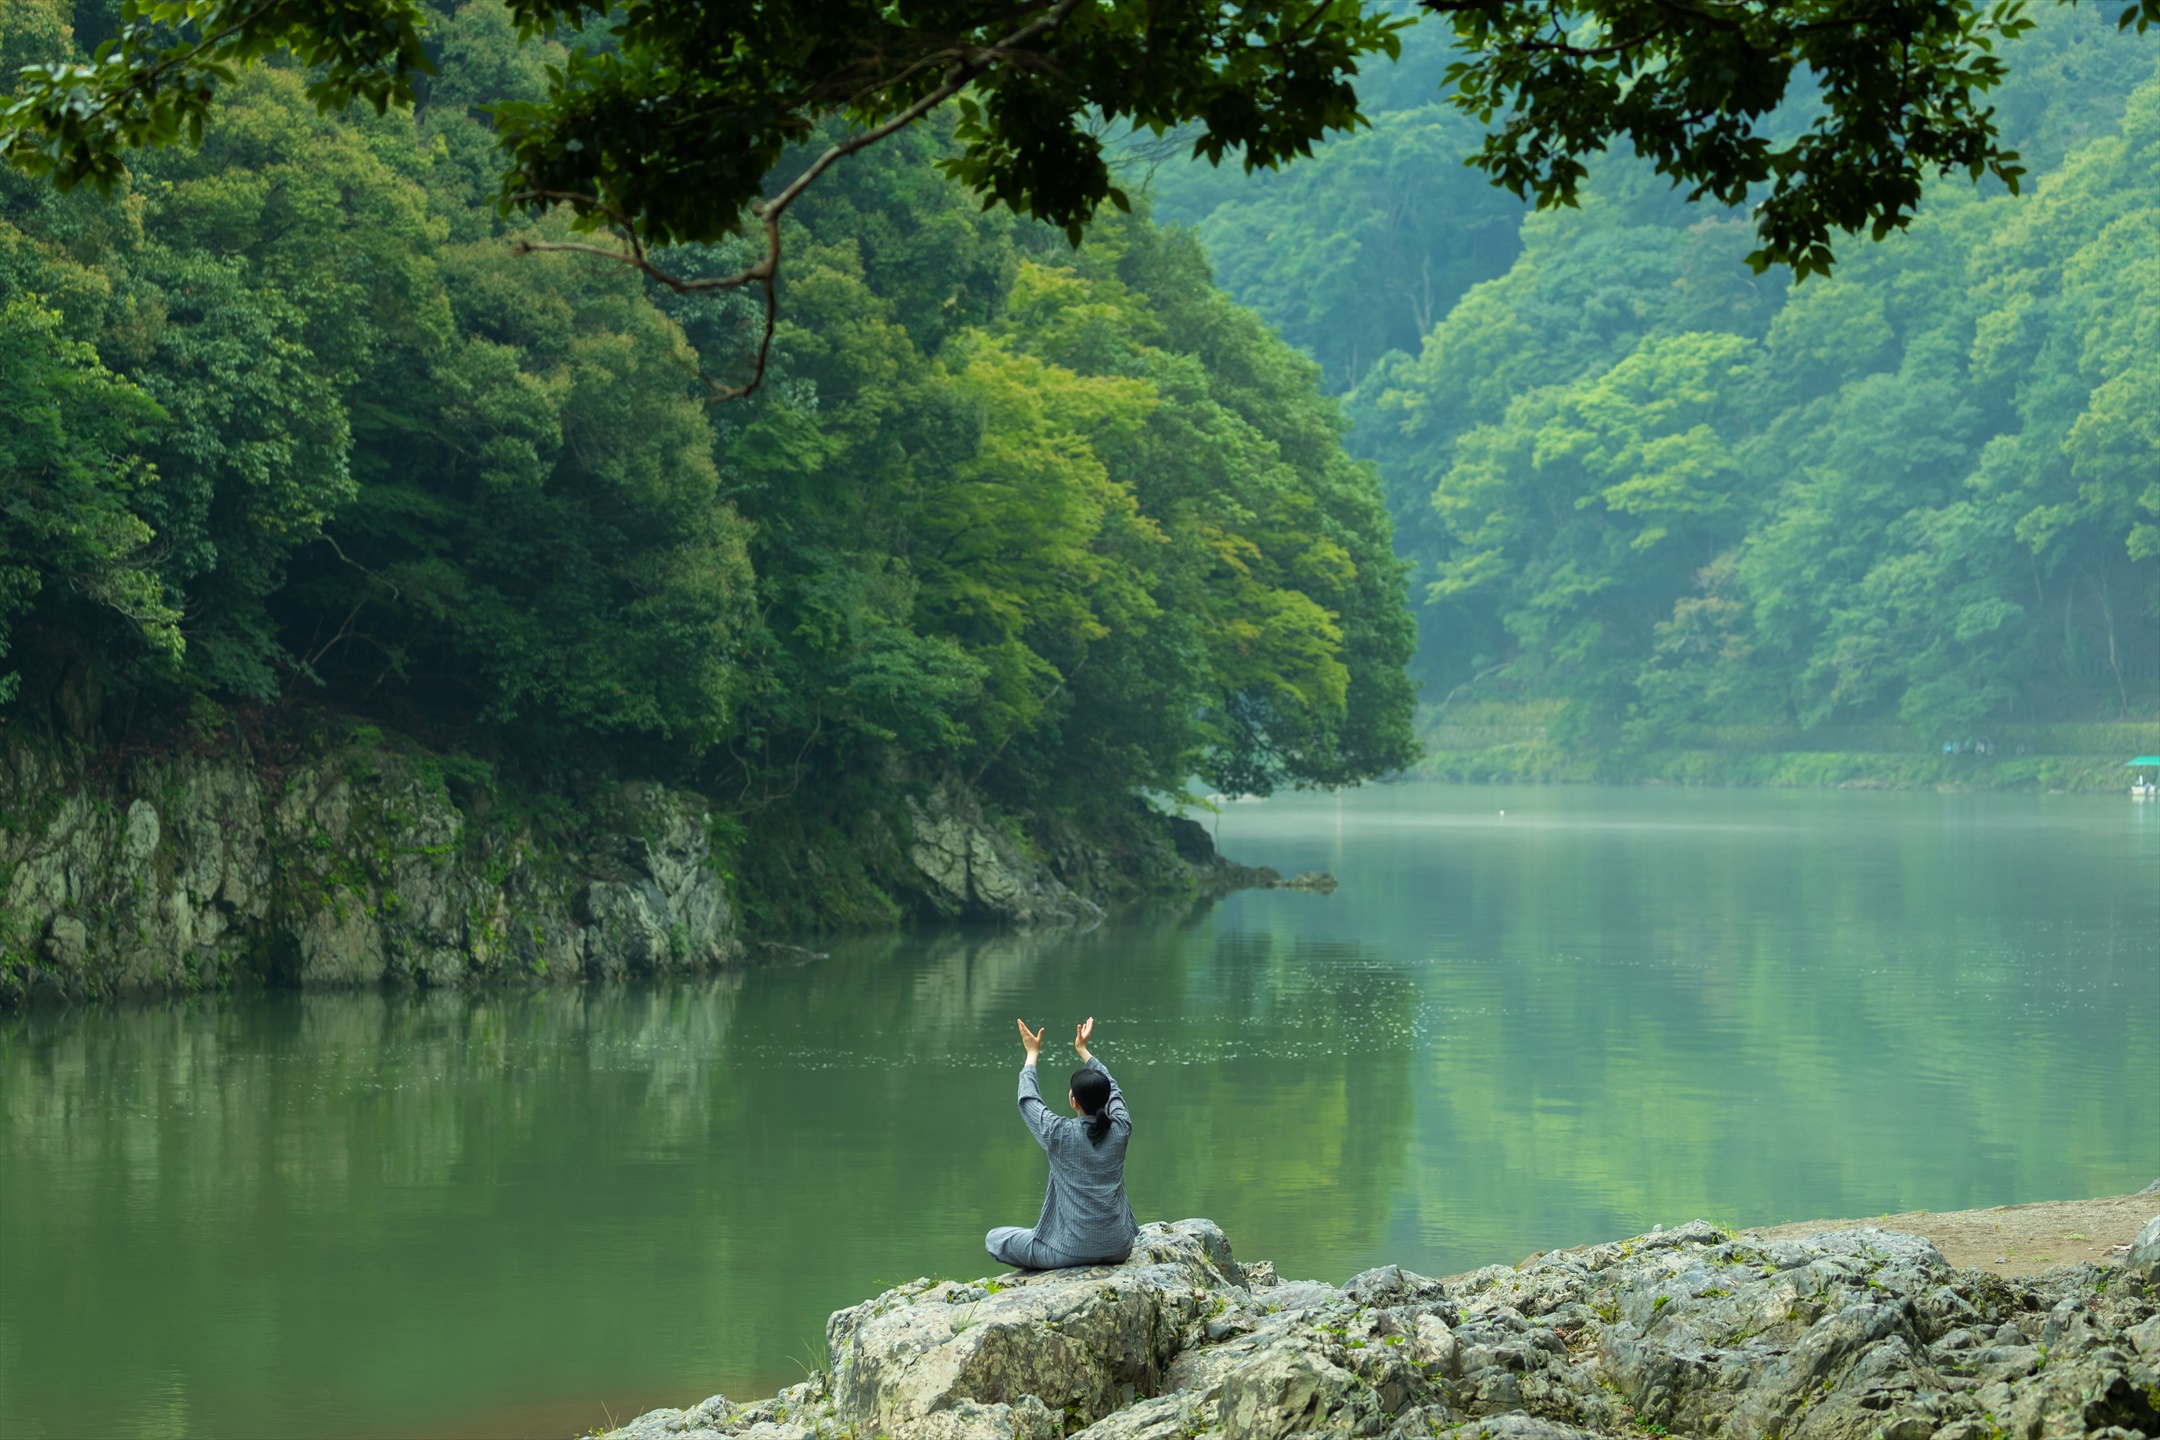 星のや京都　京都の伝統文化体験と東洋医学で免疫力を高める 滞在型ウェルネスプログラム「水辺の洗心」提供開始　開始日：2020年10月1日